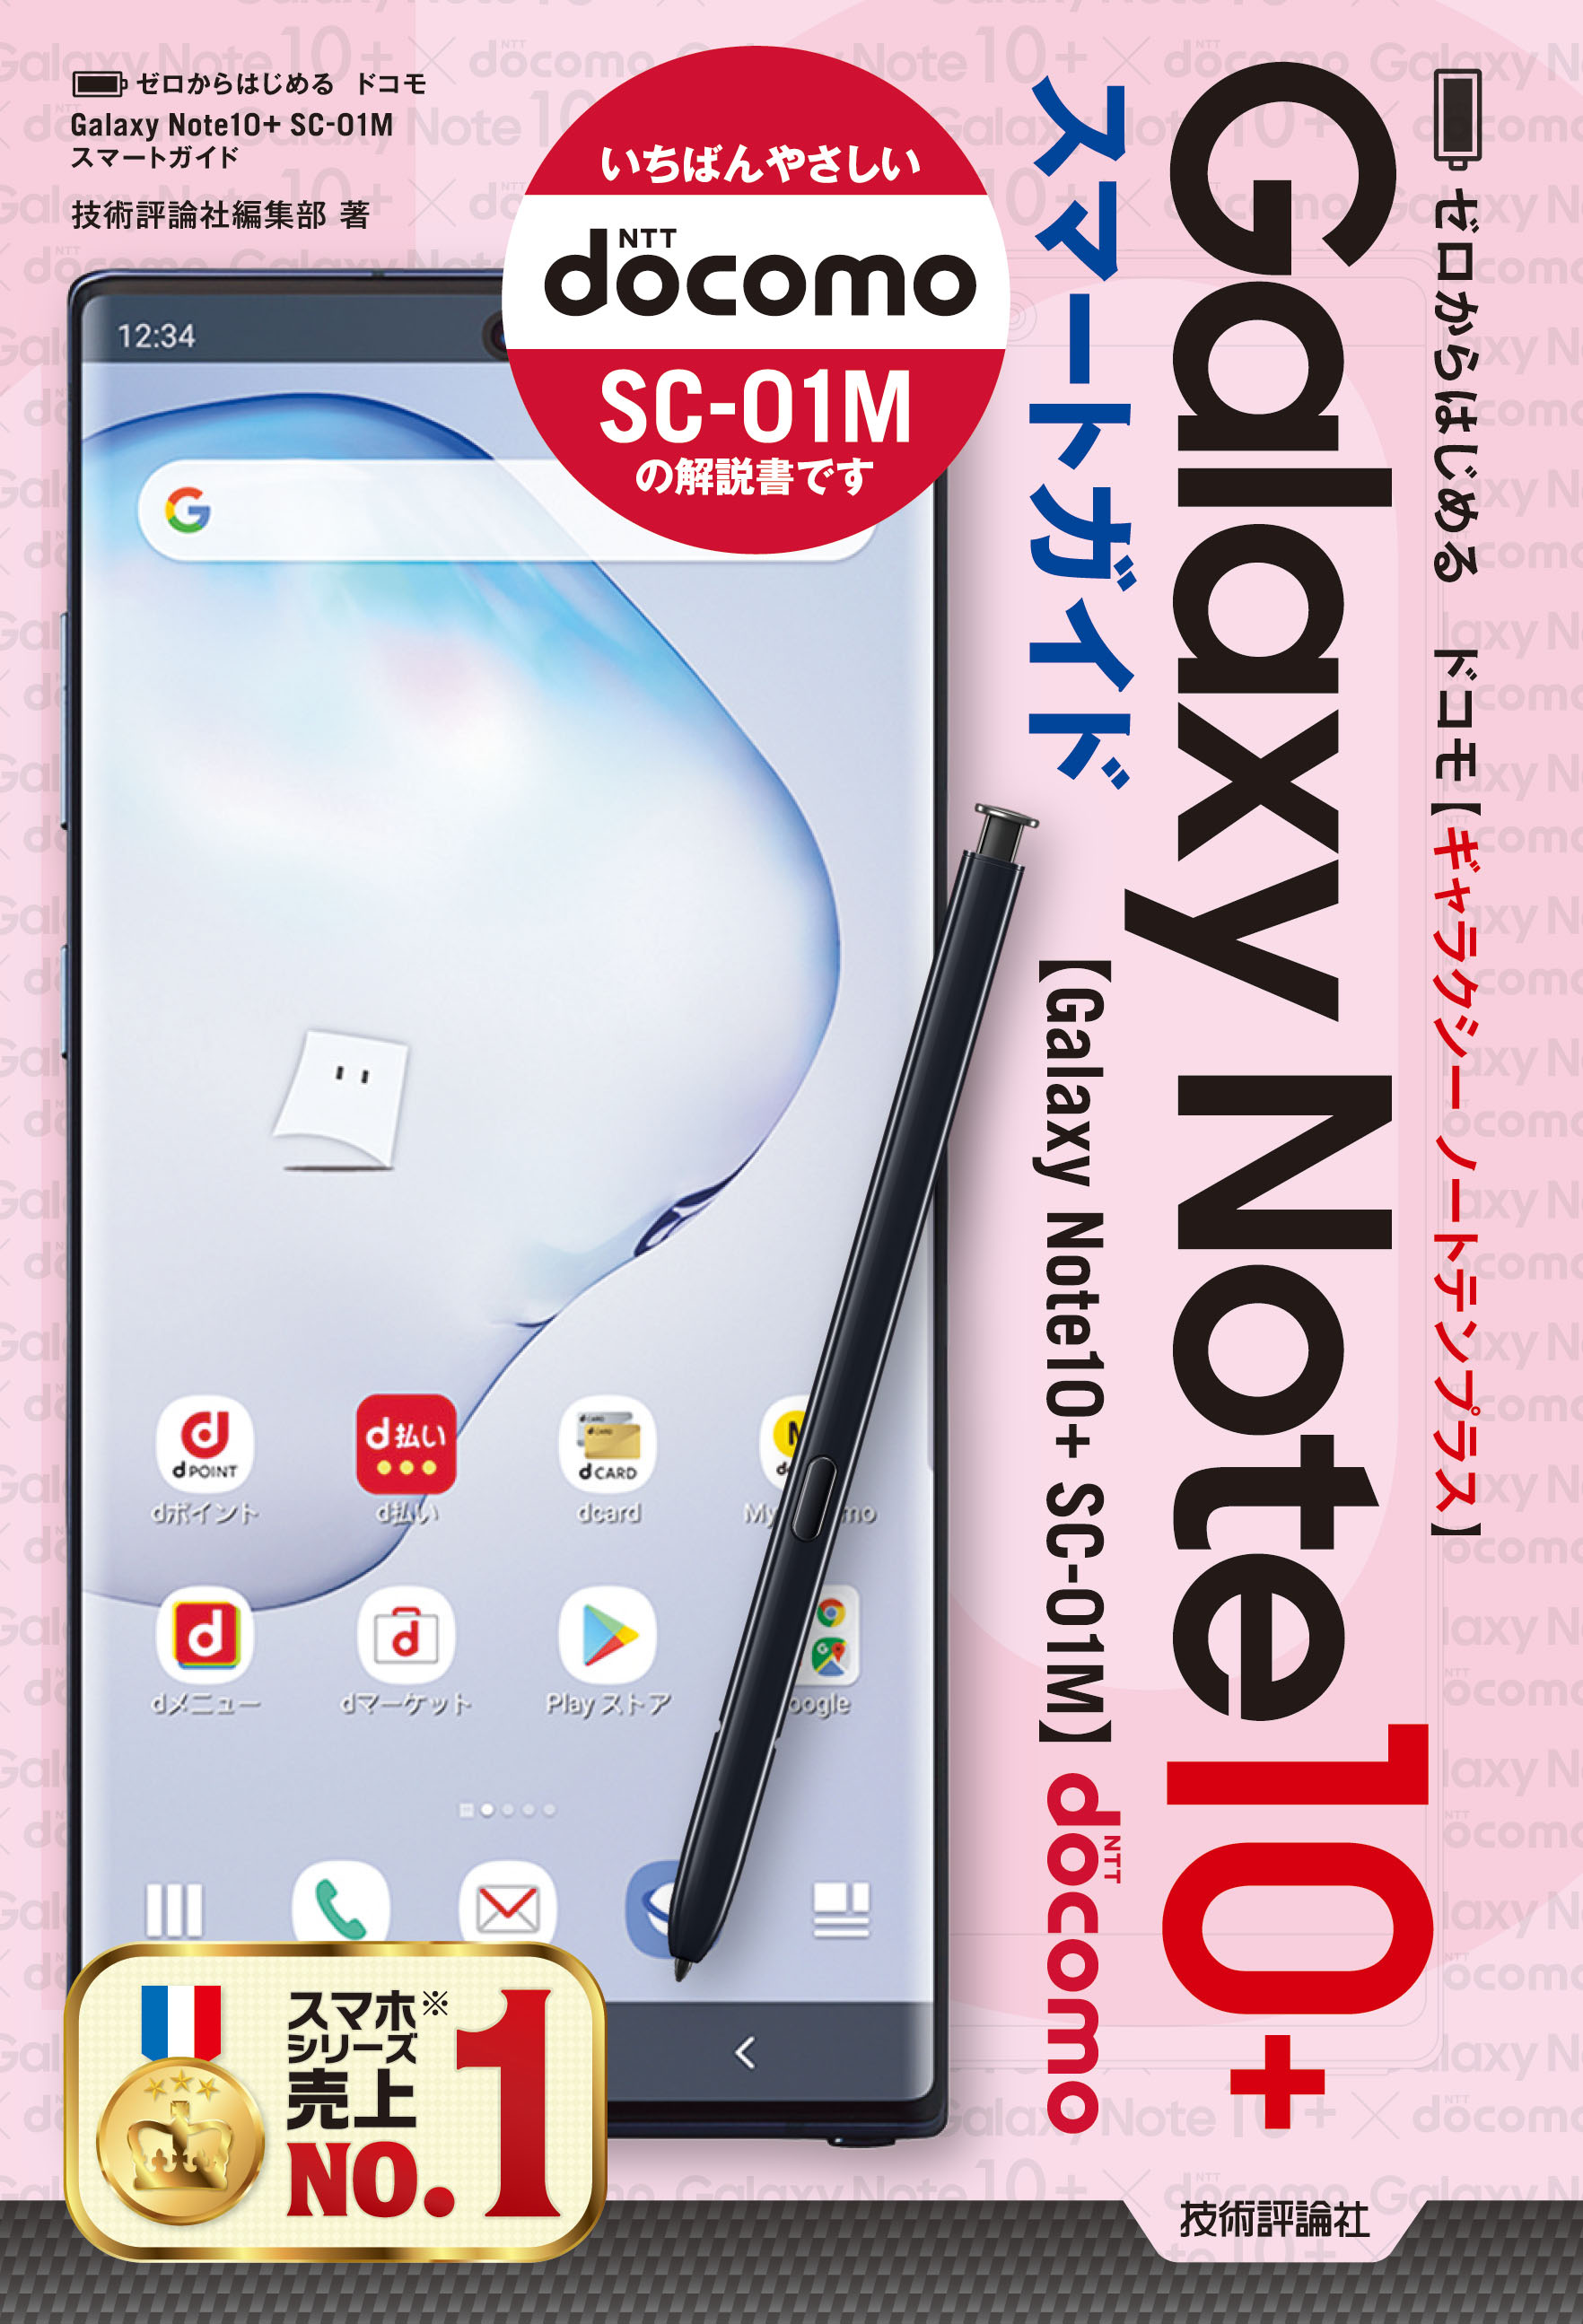 専用 Samsung Galaxy Note10+ ドコモ版 SC-01M - スマートフォン本体